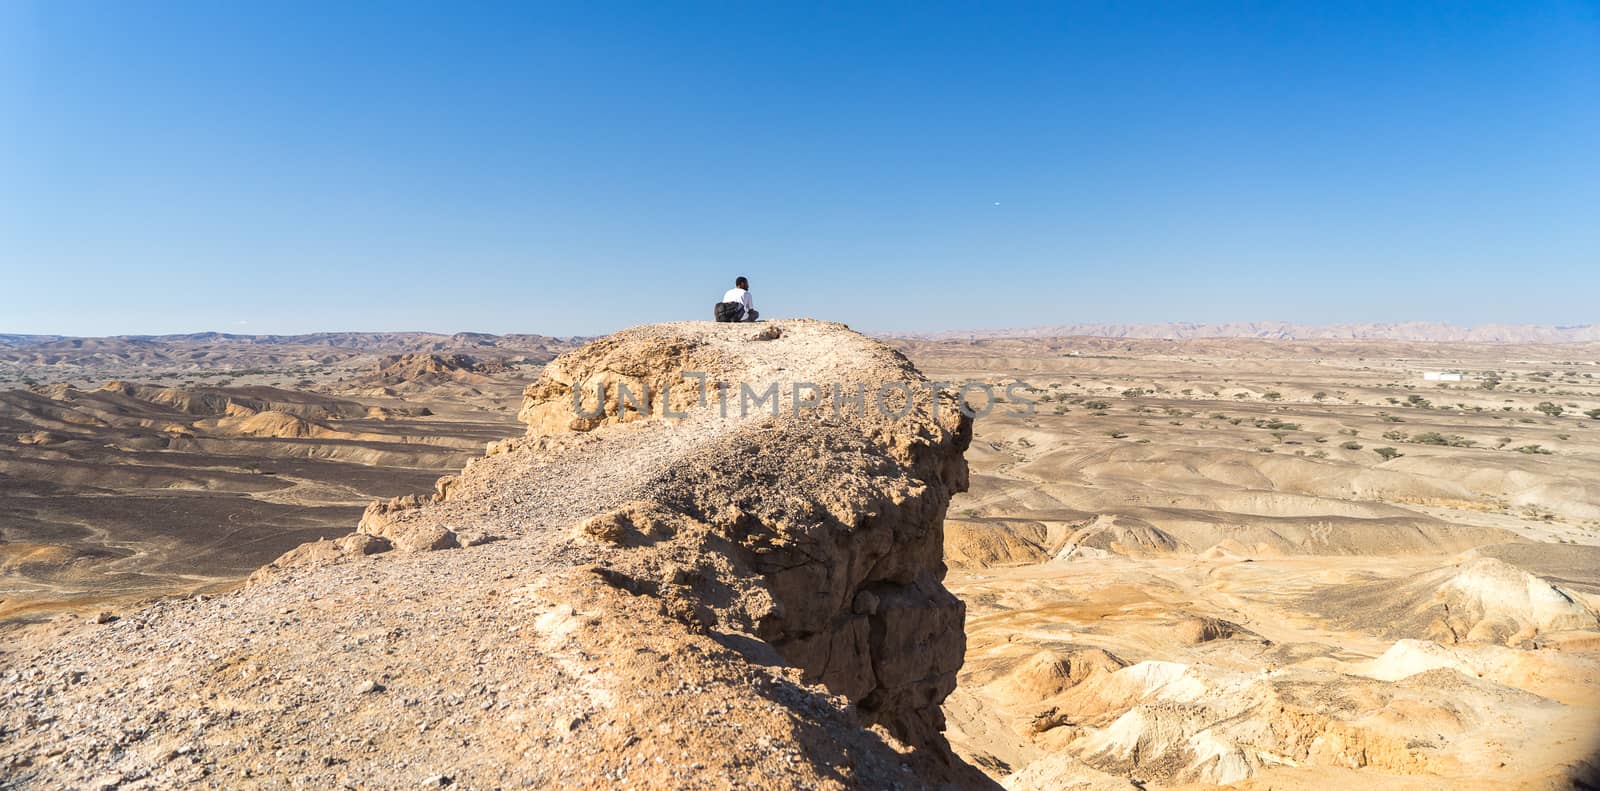 Man in a desert landscape of Israel by javax